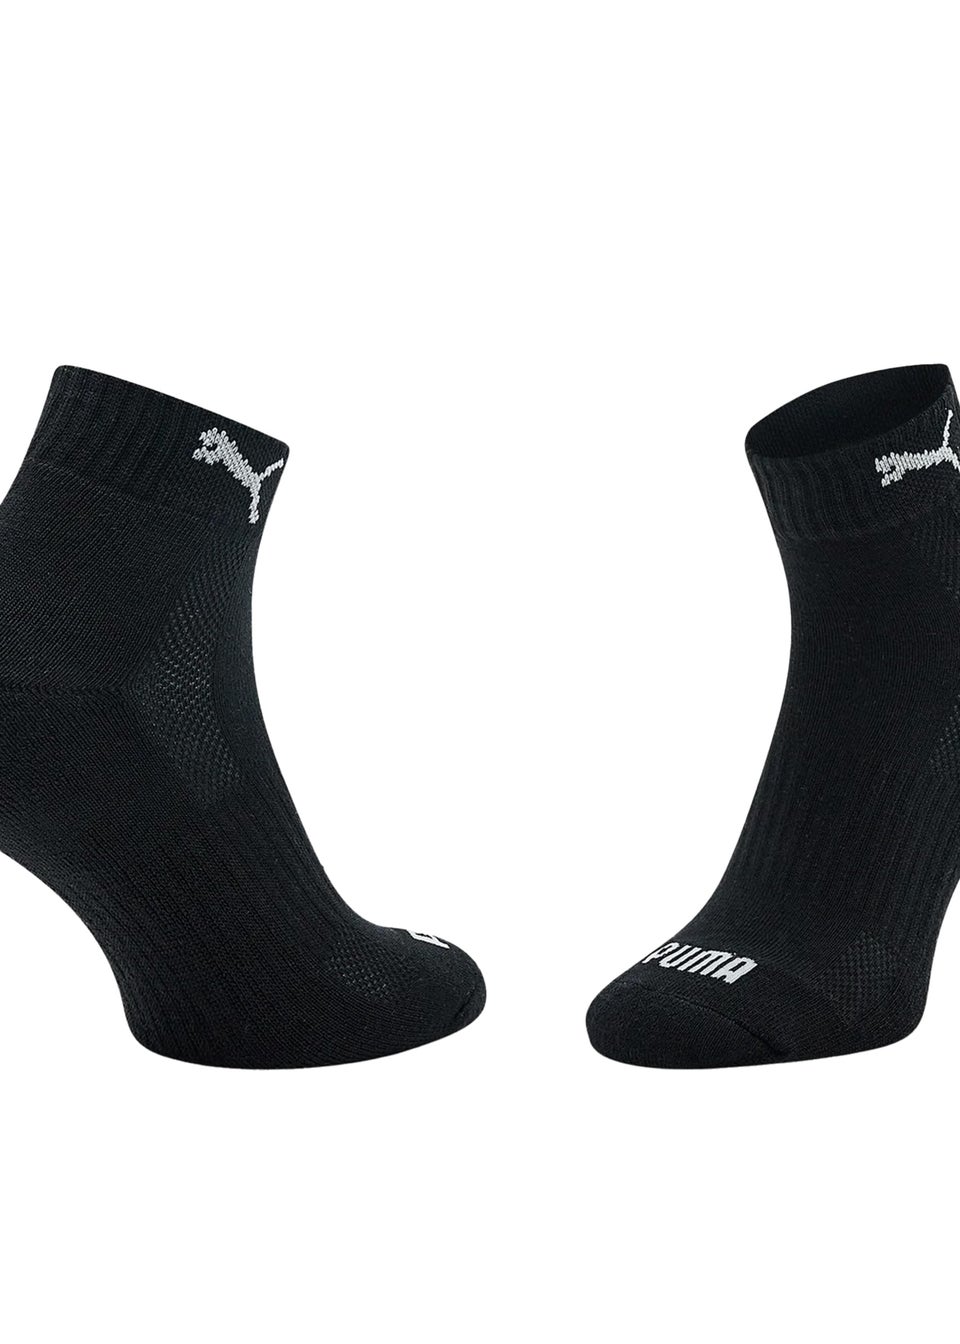 Puma Black/White Cushioned Ankle Socks (Pack of 3)